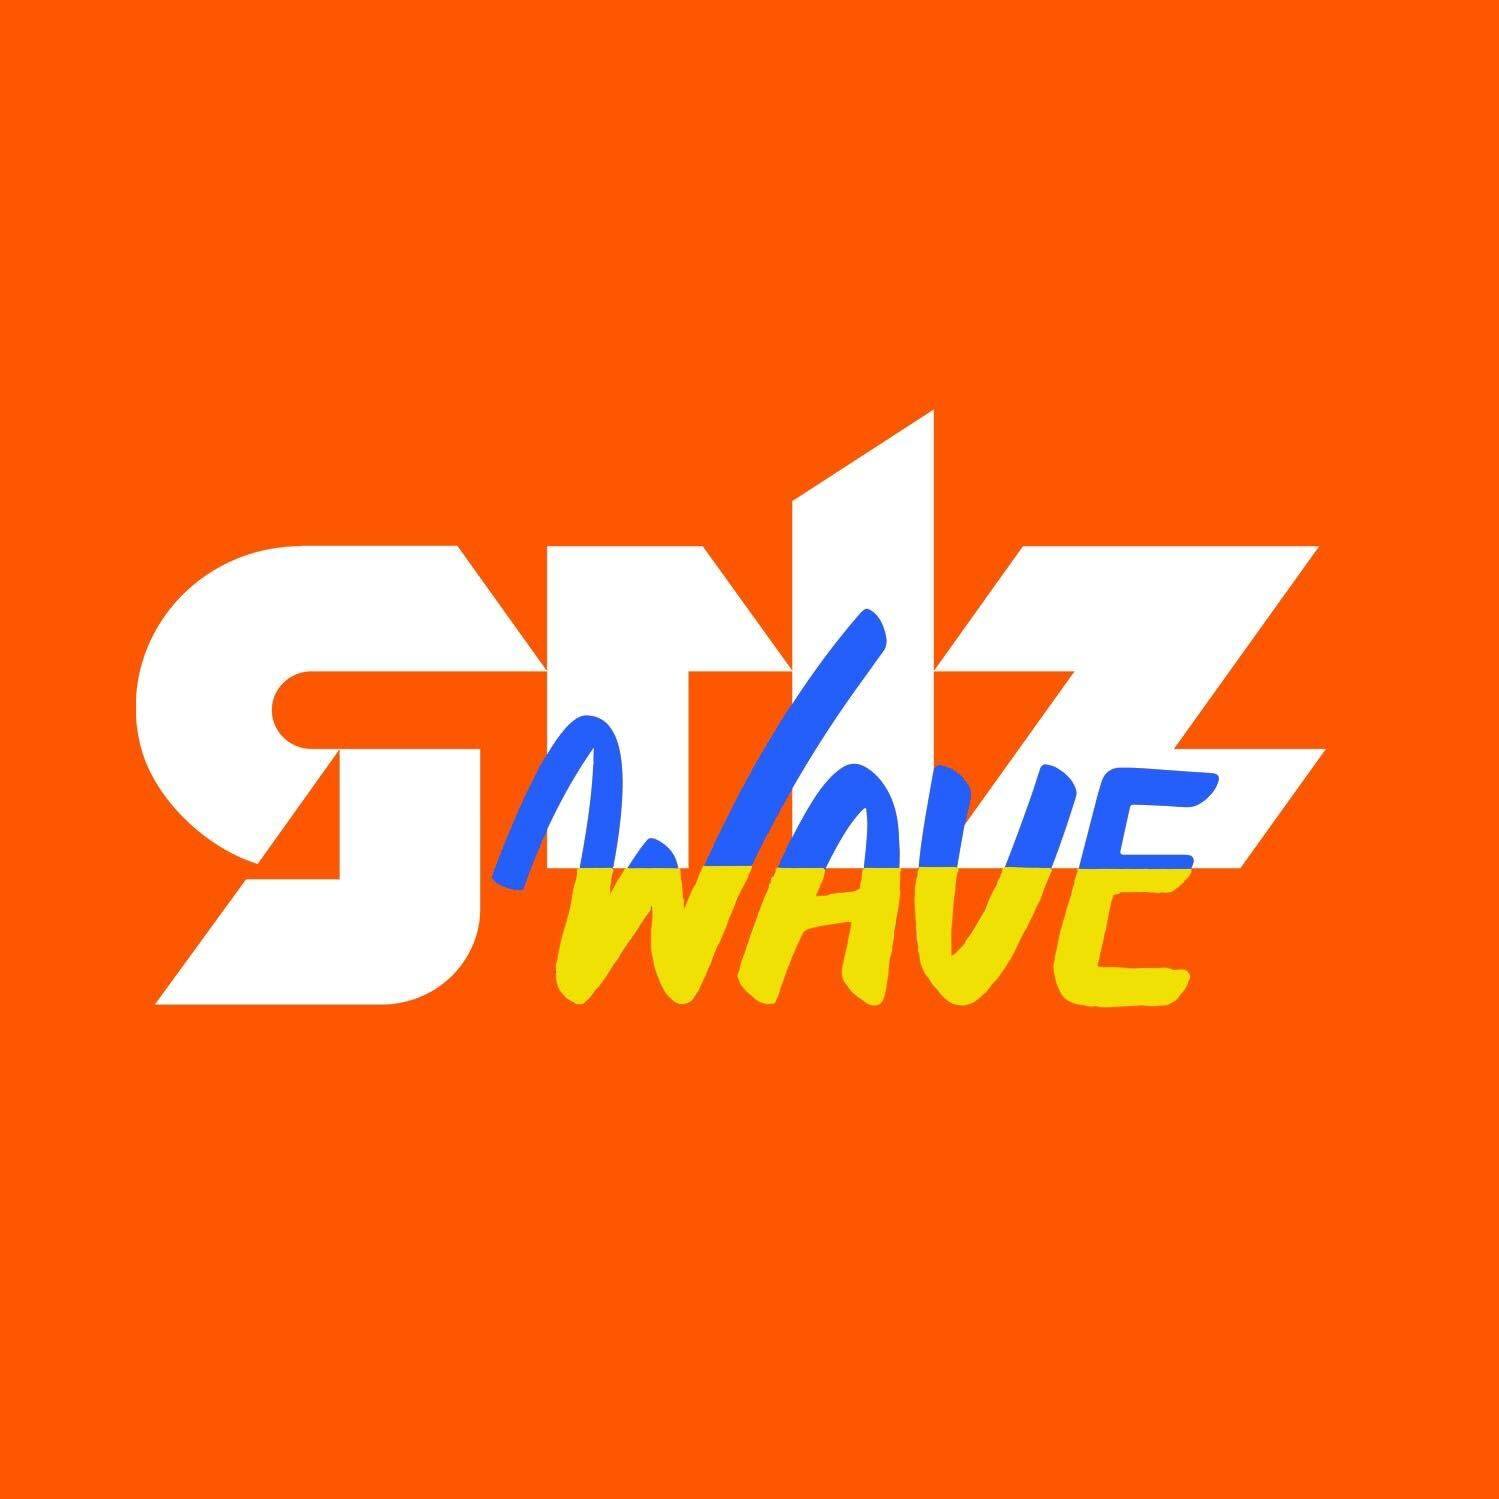 Grlz Wave: რა უნდა ვიცოდეთ „უცხოური გავლენის გამჭვირვალობის შესახებ“ კანონპროექტზე